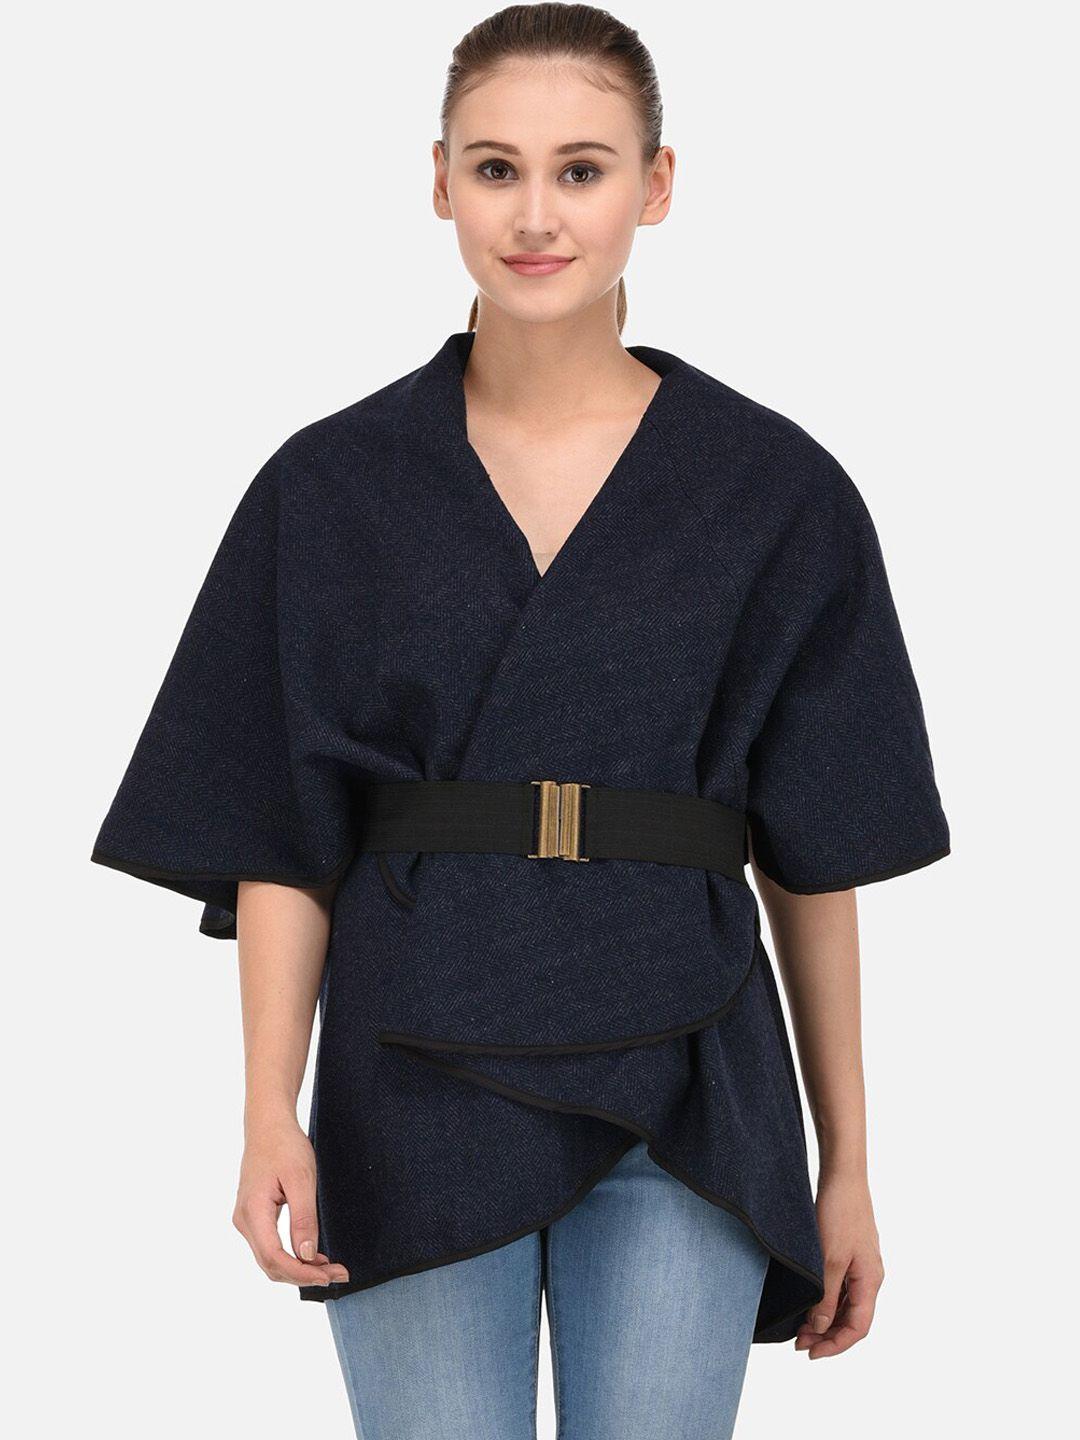 owncraft women navy blue self design woollen overcoat with belt